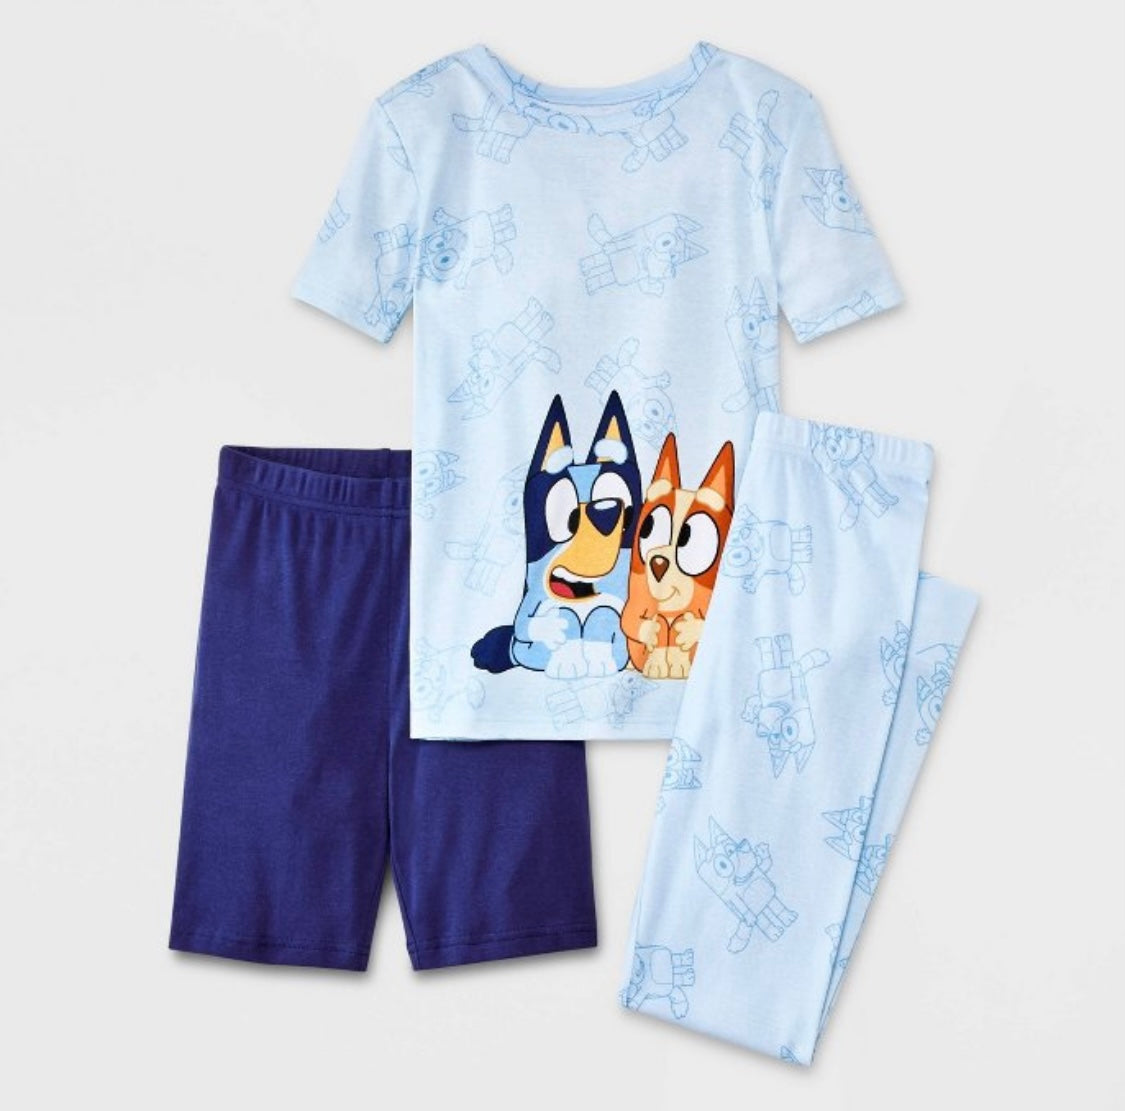 Pijama Bluey niño 3 piezas – Karen Variedad de Artículos